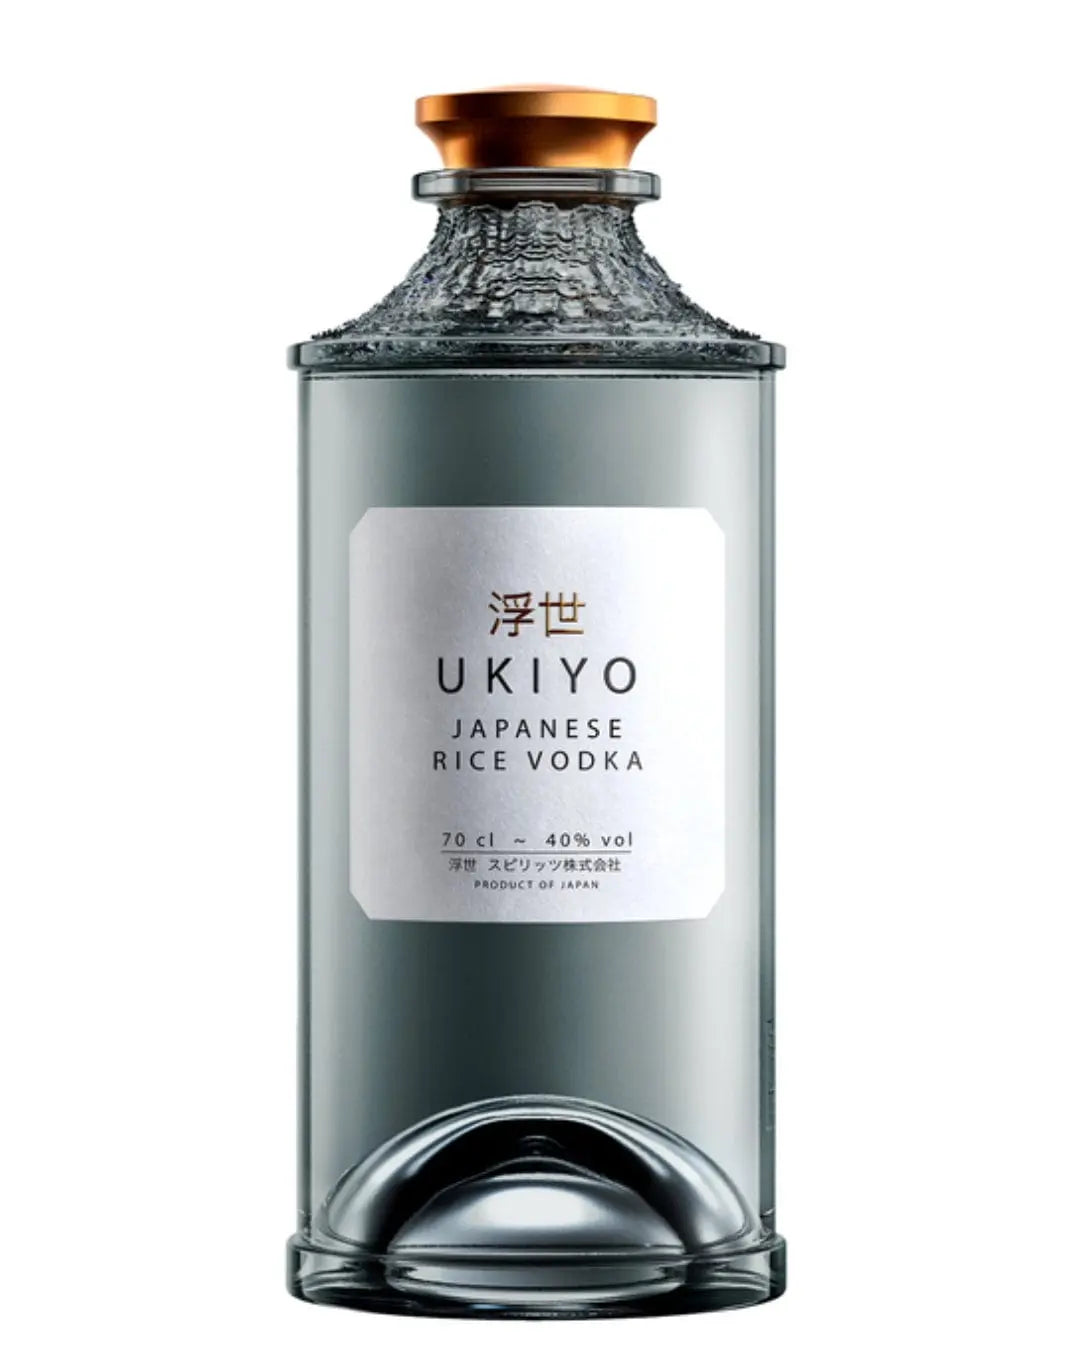 Ukiyo Japanese Rice Vodka, 70 cl Vodka 5060434133182